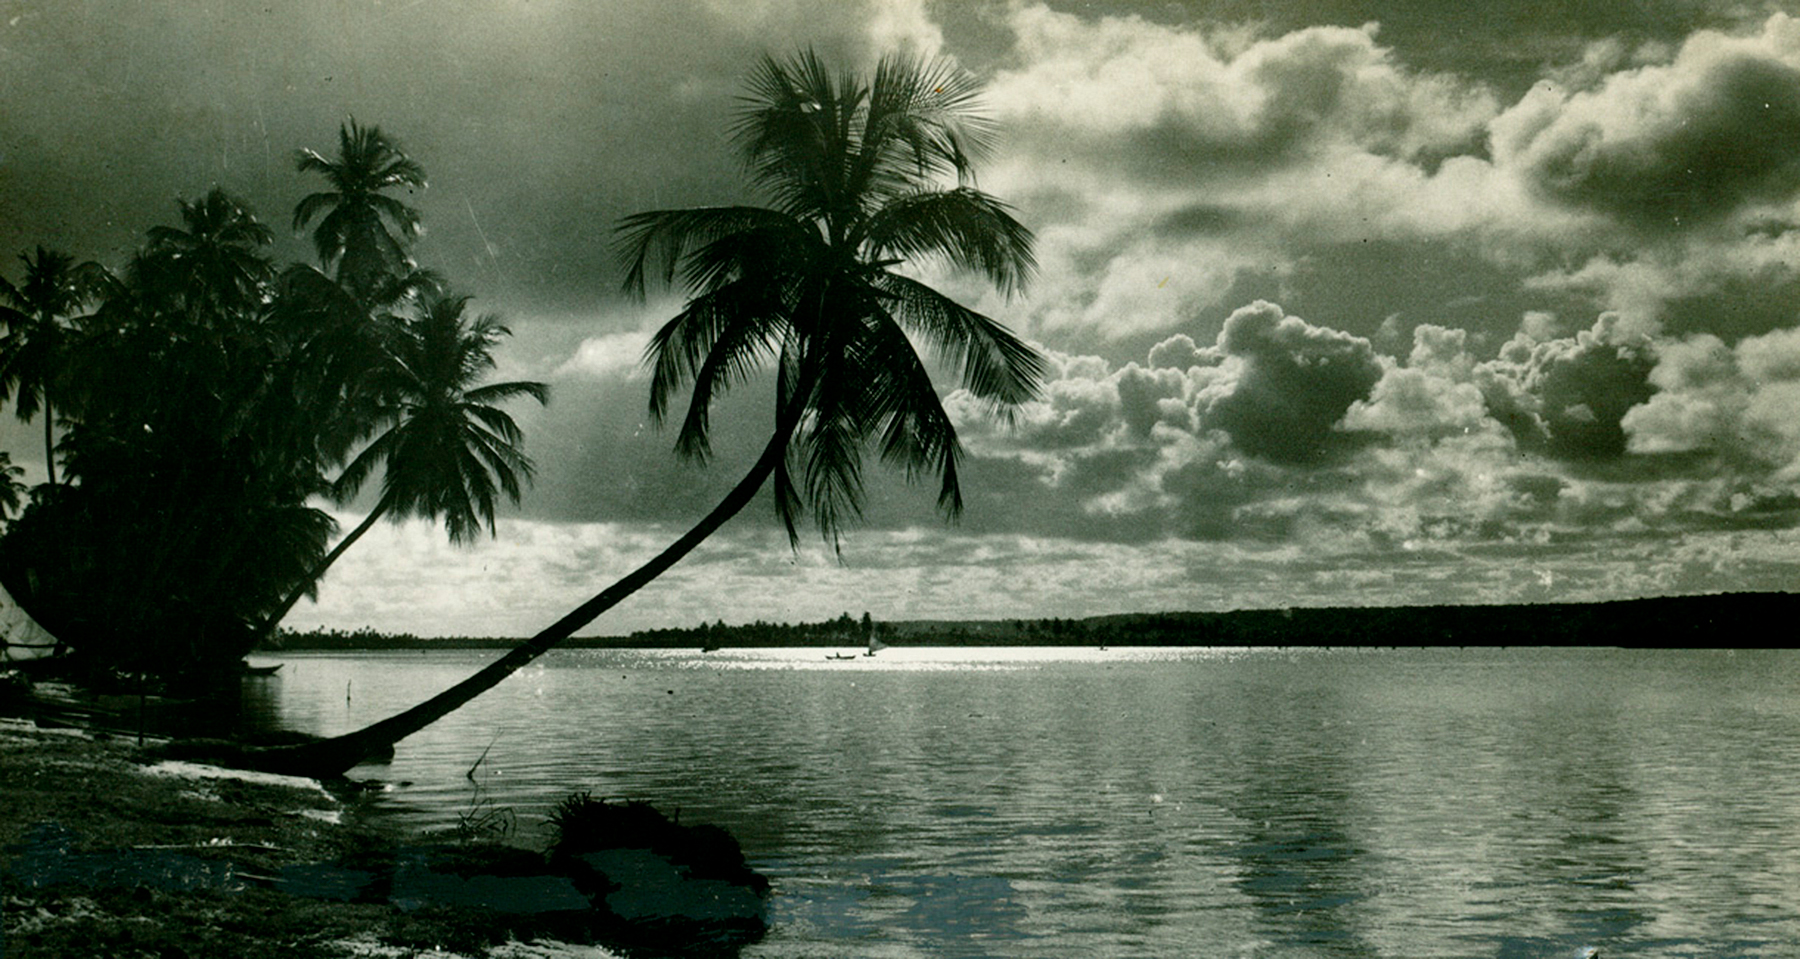 imagen en escala de grises de palmeras inclinadas sobre el agua